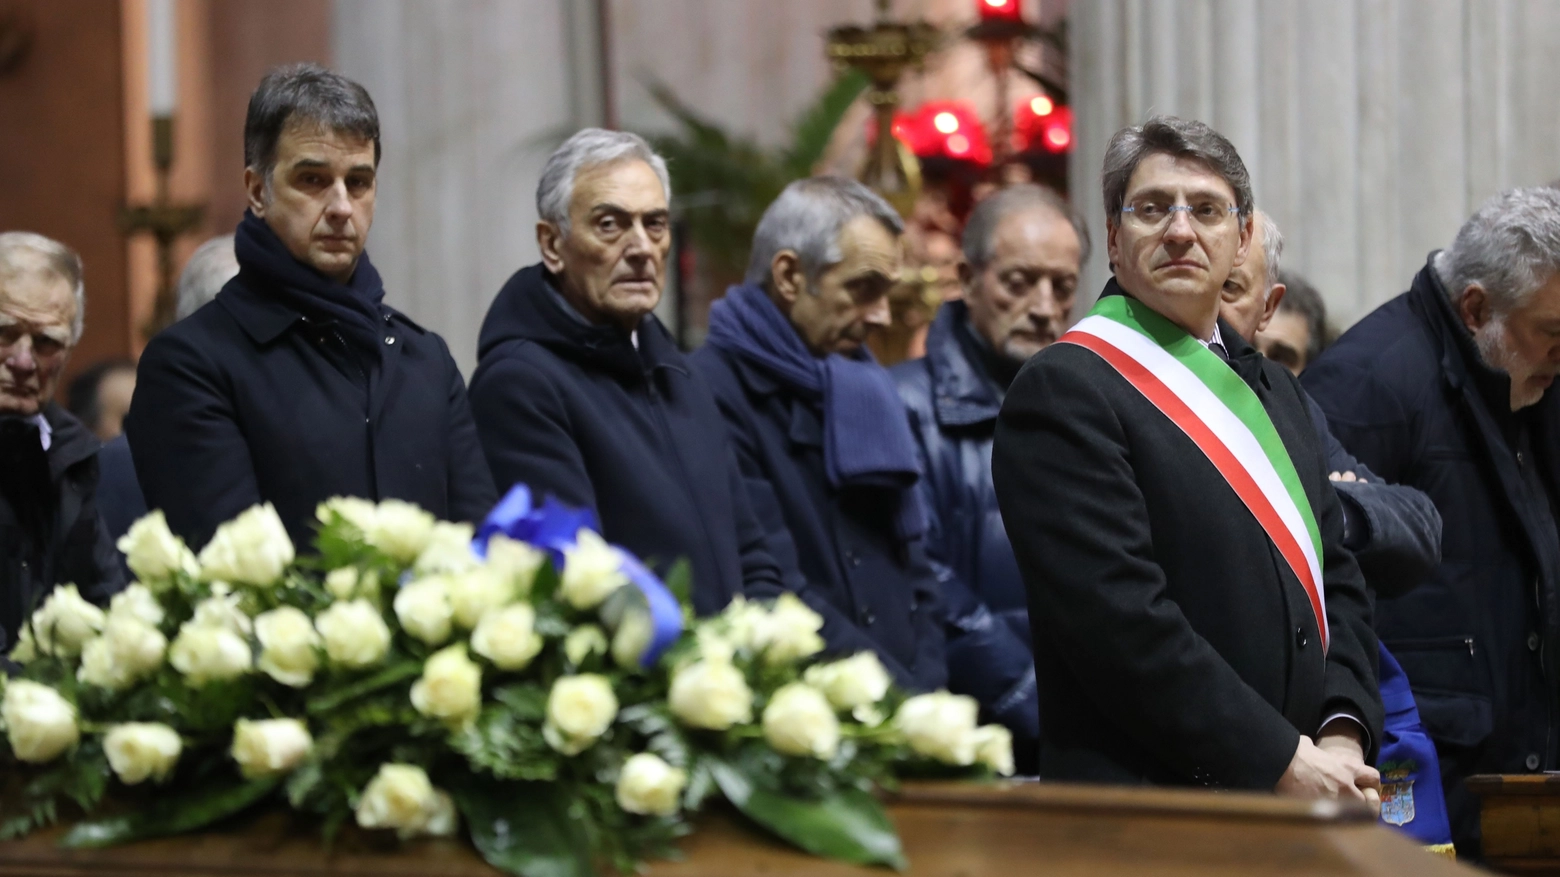 Funerale di Azeglio Vicini (Fotolive)